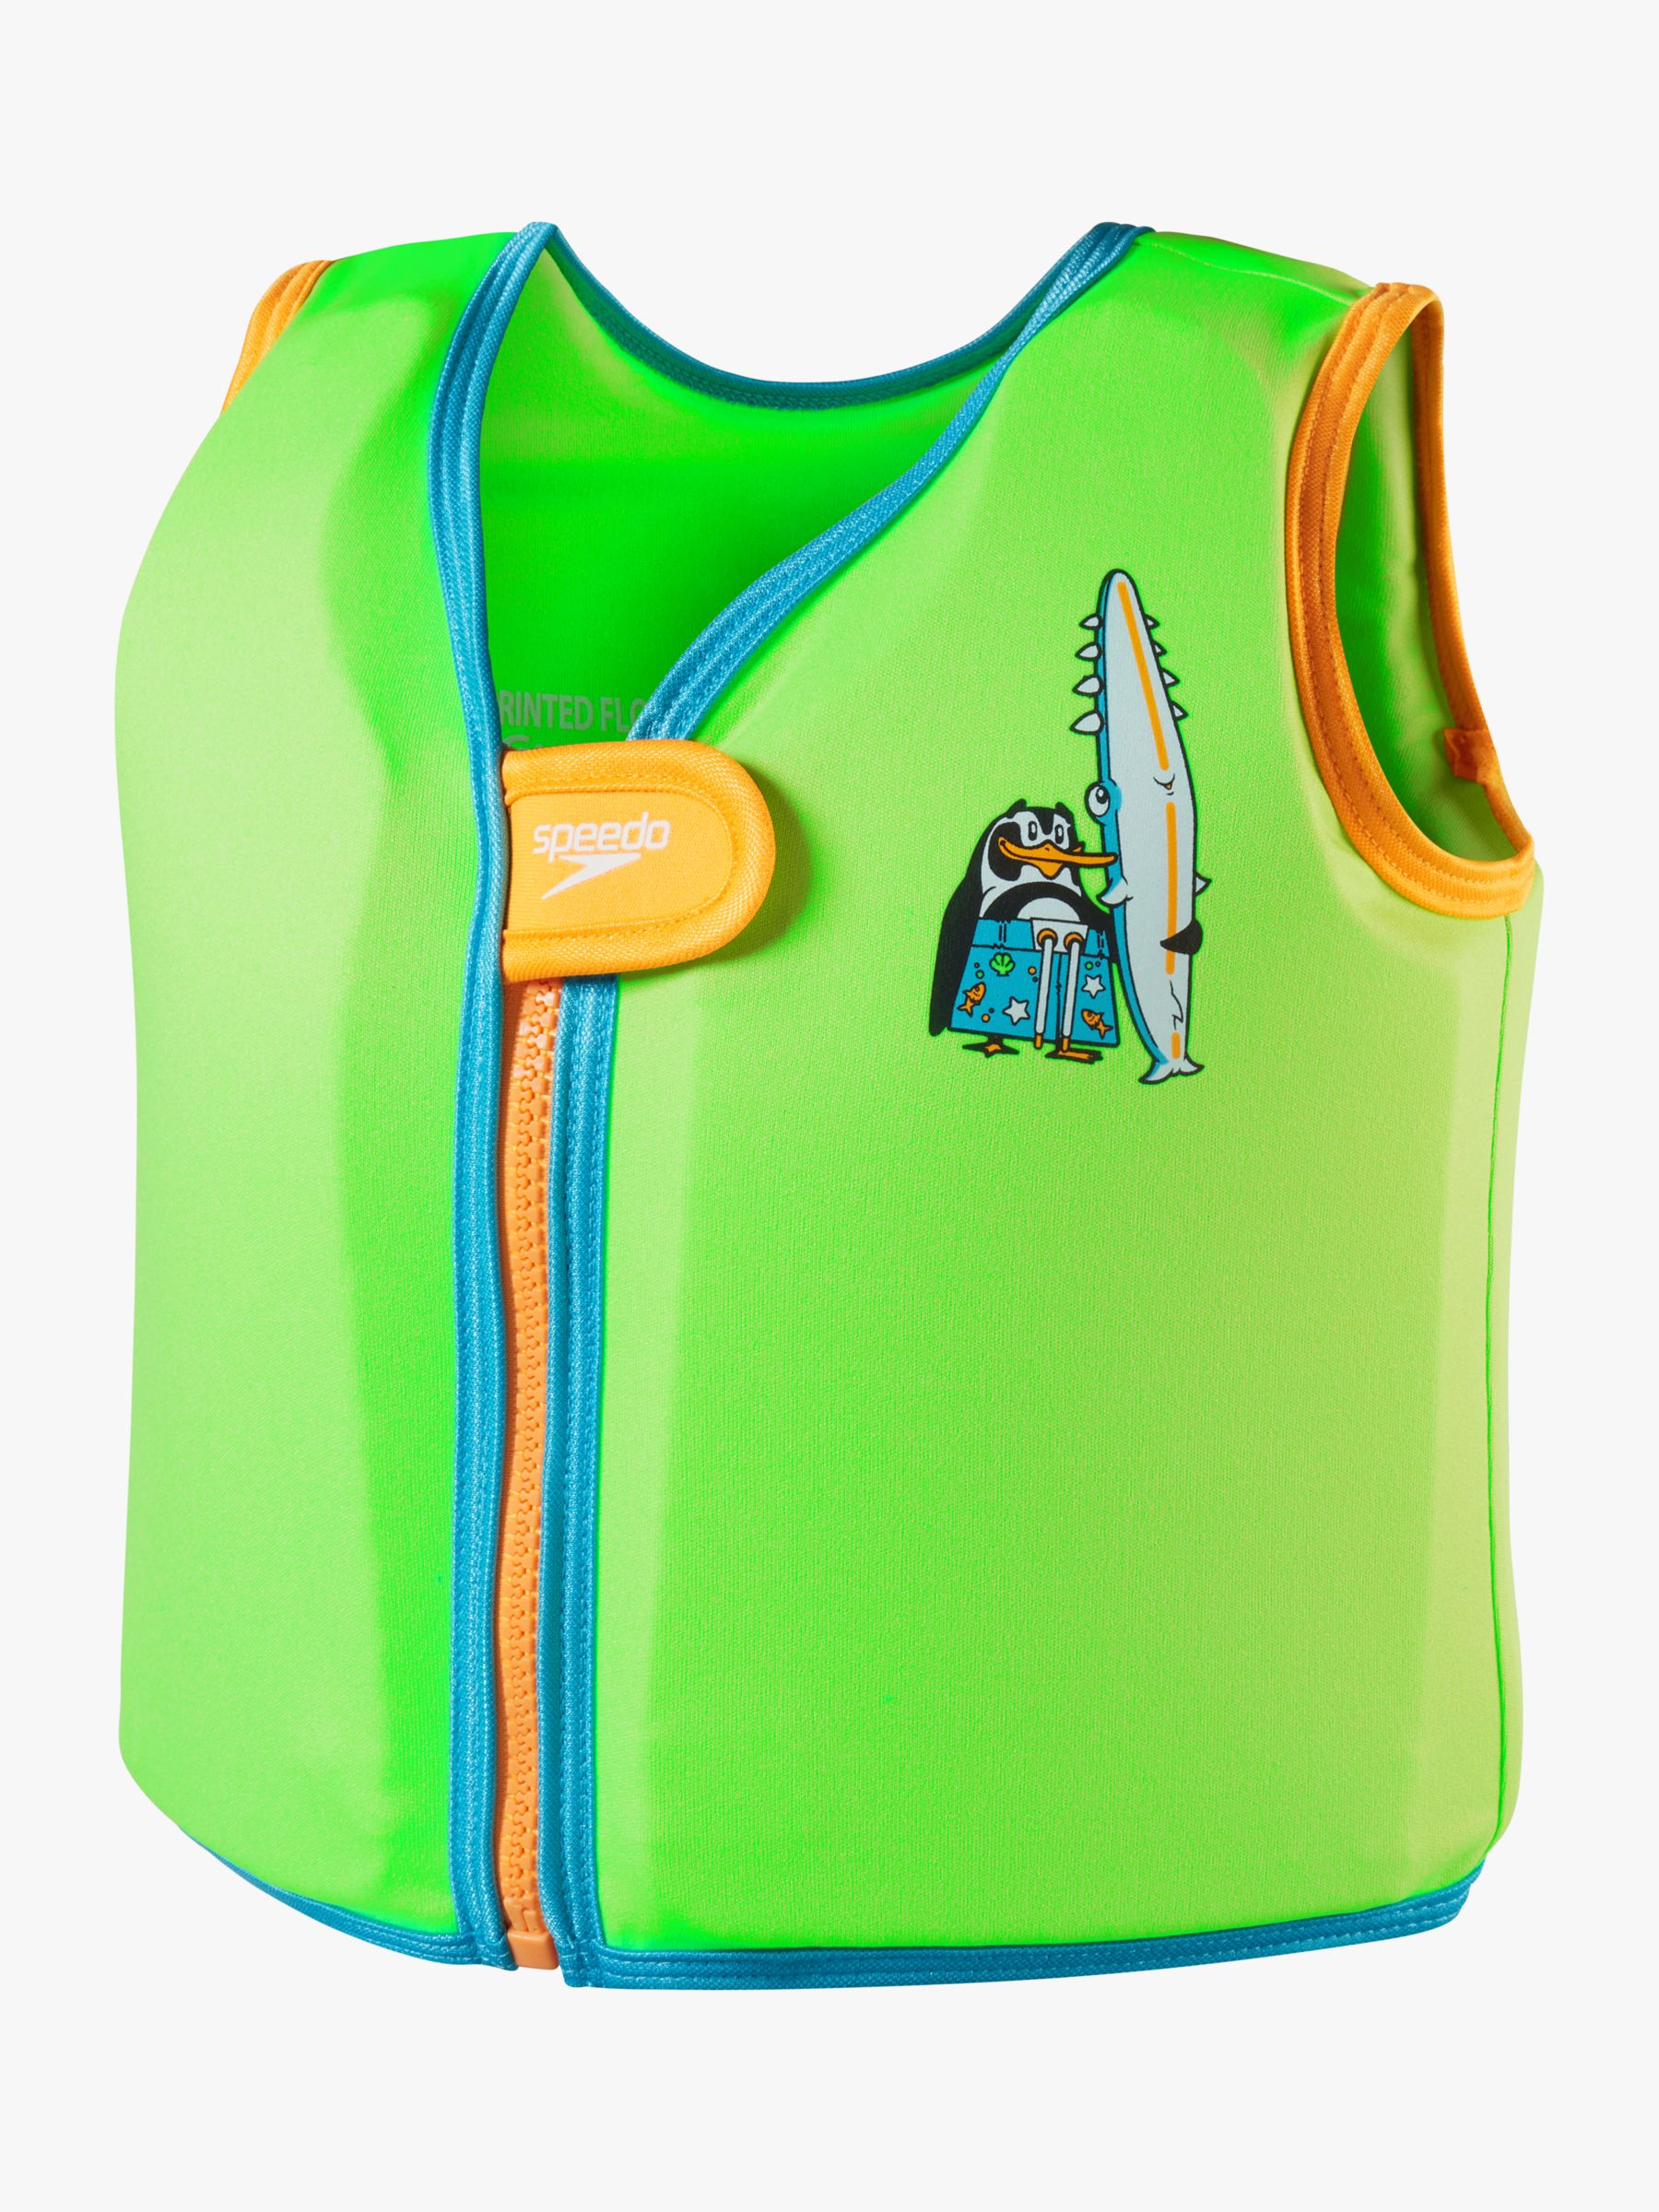 Speedo Baby Penguin Float Vest, Azure Blue/Fluro, 1-2 years